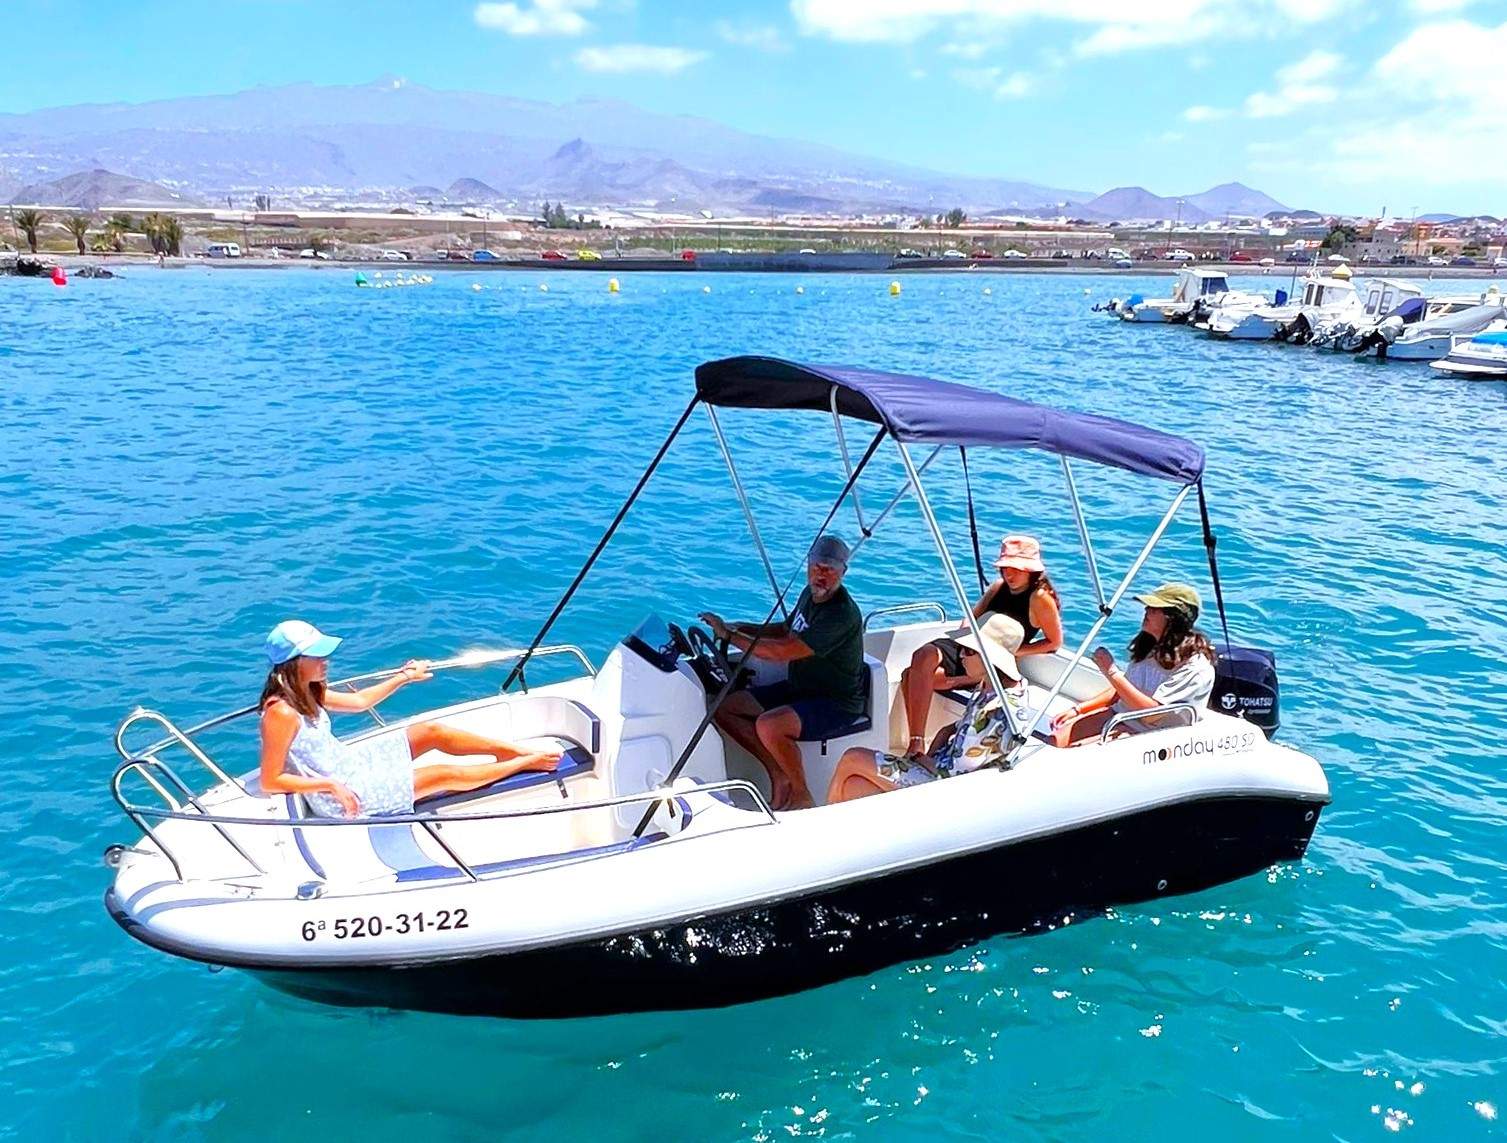 Yacht charter uden skipper eller licens i Tenerife Syd for 6 personer